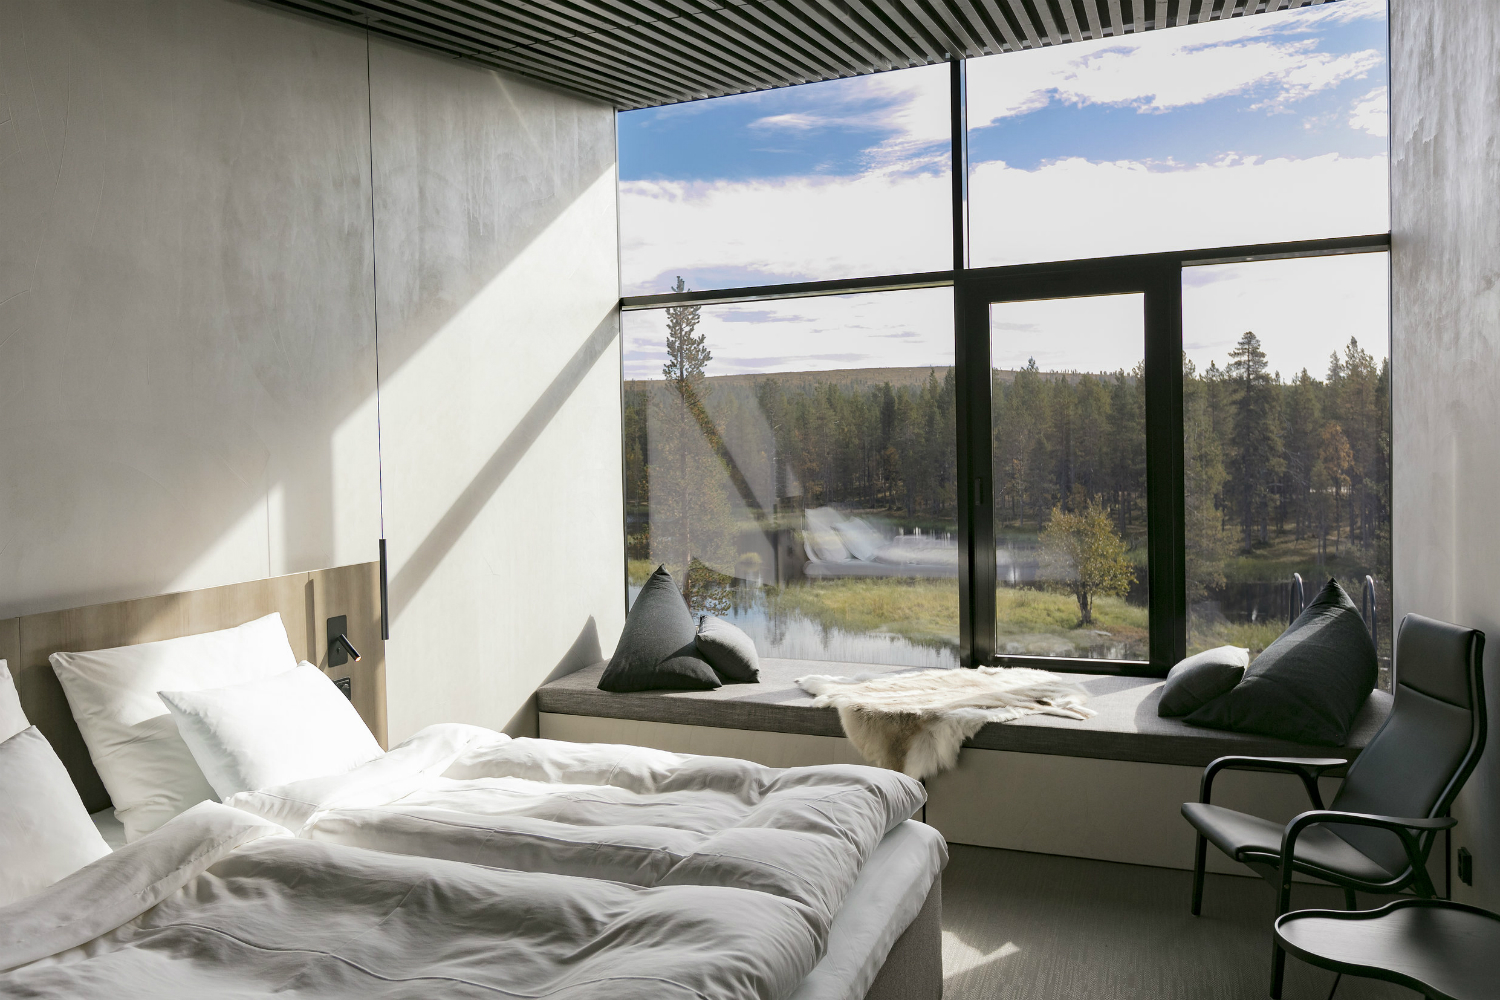 architecture javri lodge hotel finland bedroom interior 1